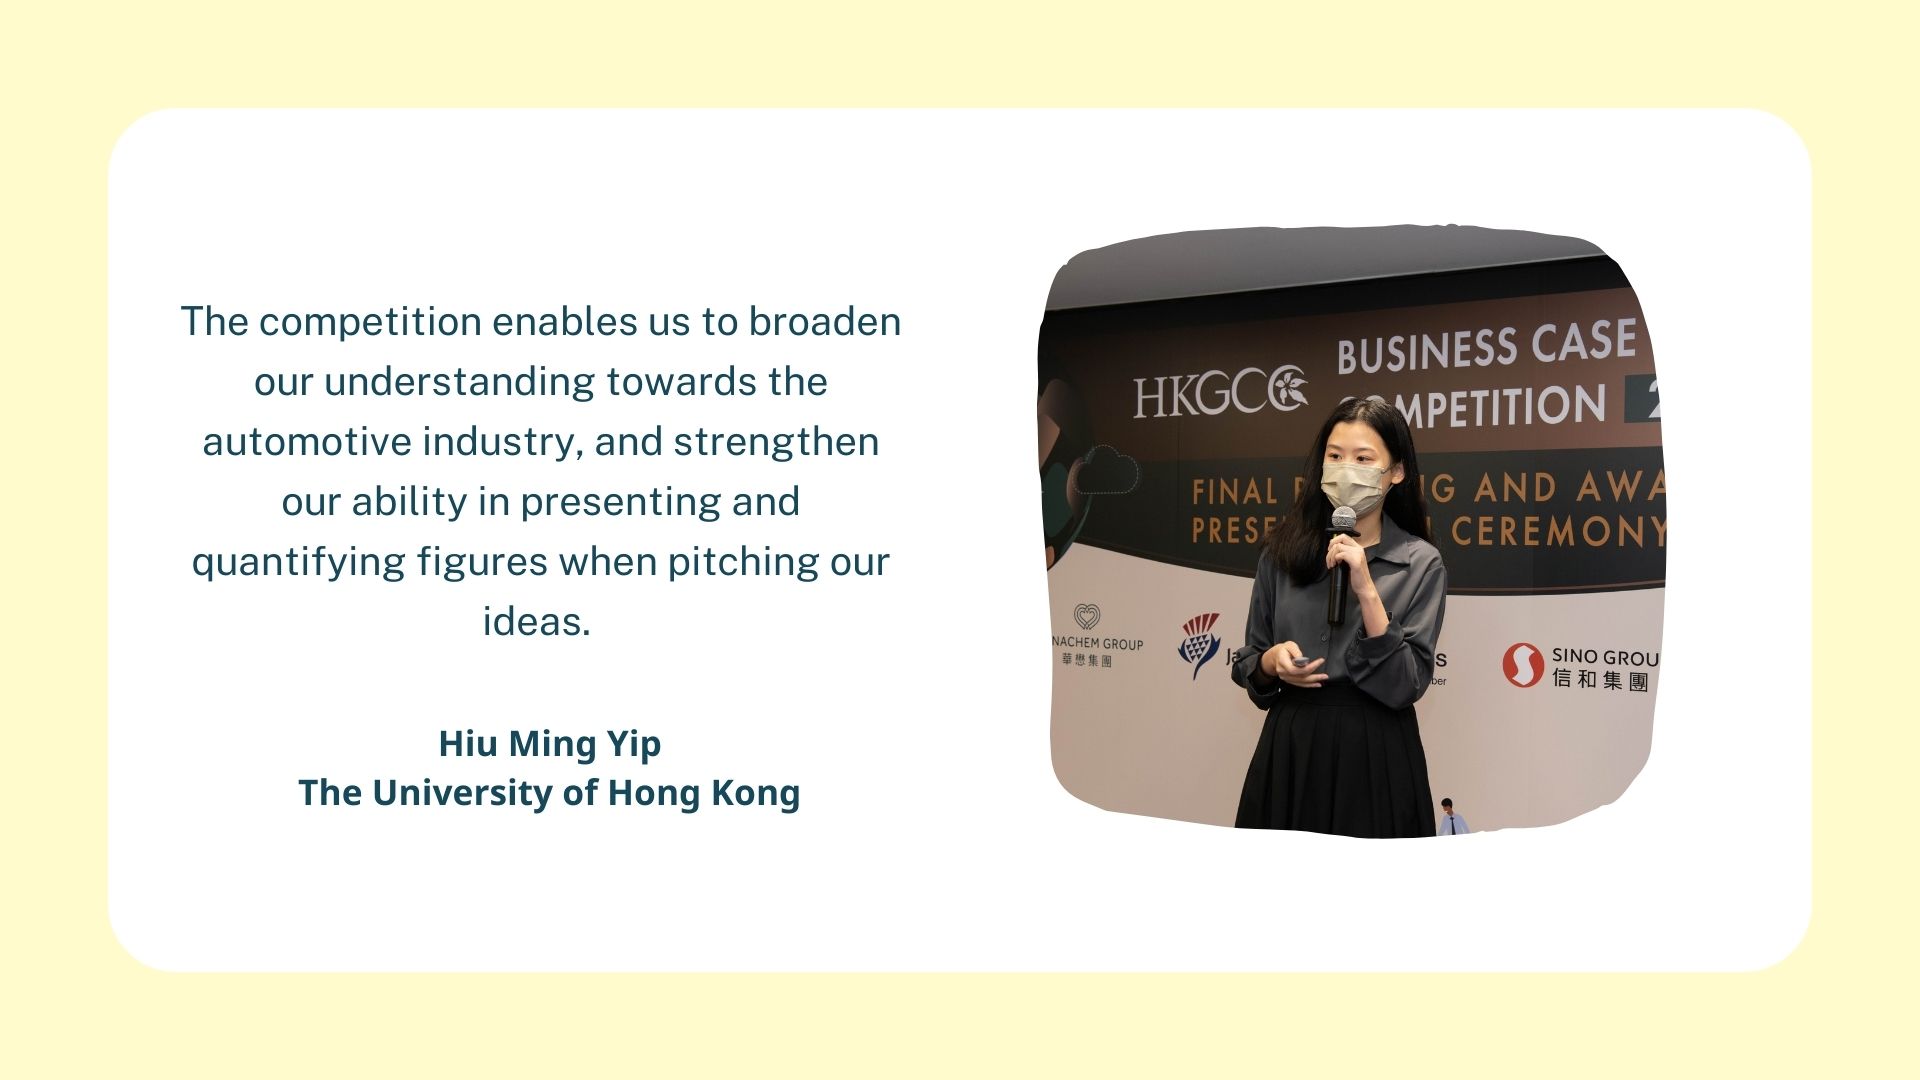 Hiu Ming Yip, The University of Hong Kong